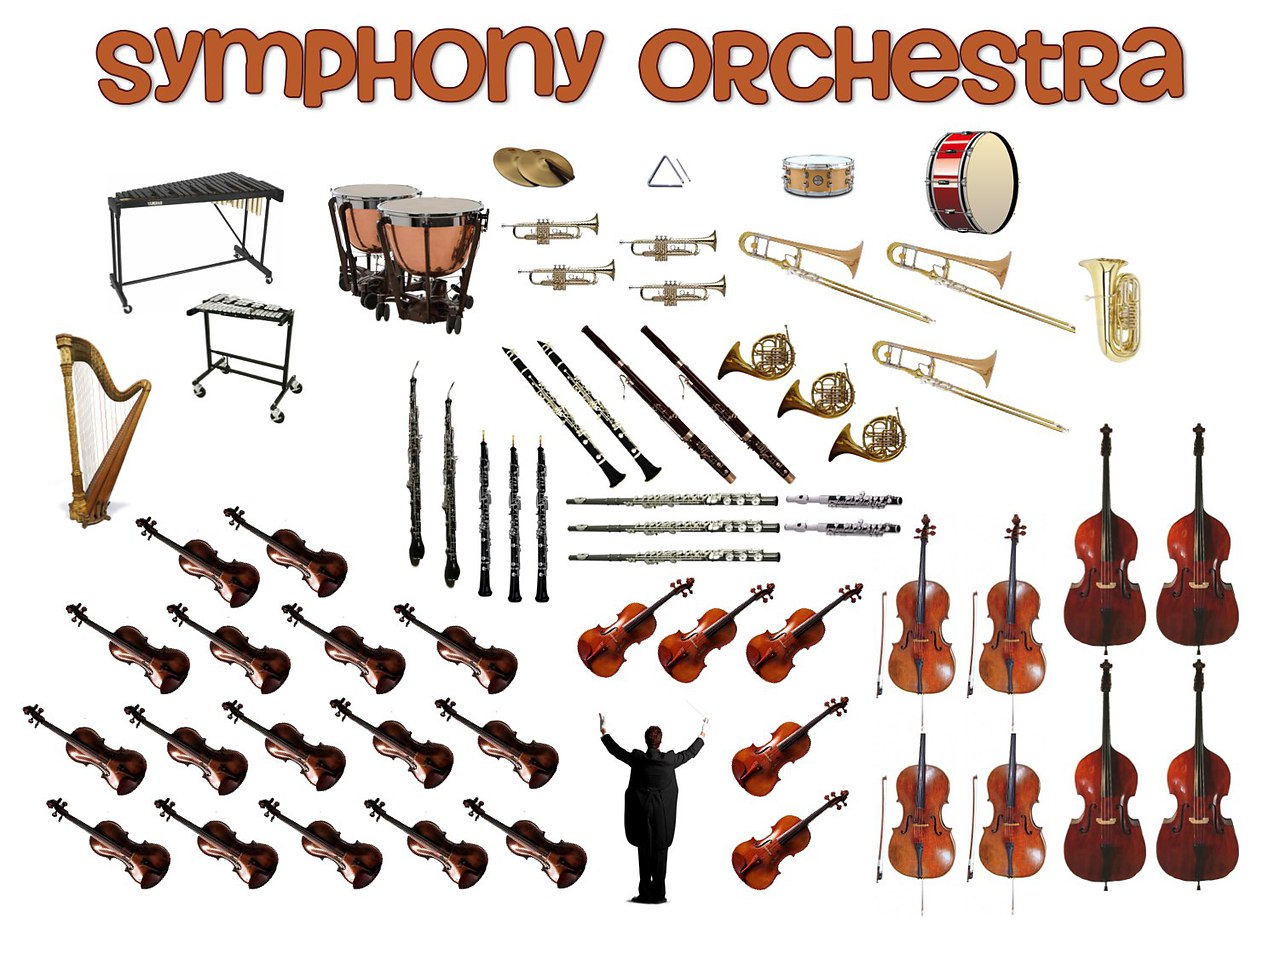 Название струнных музыкальных инструментов симфонического оркестра